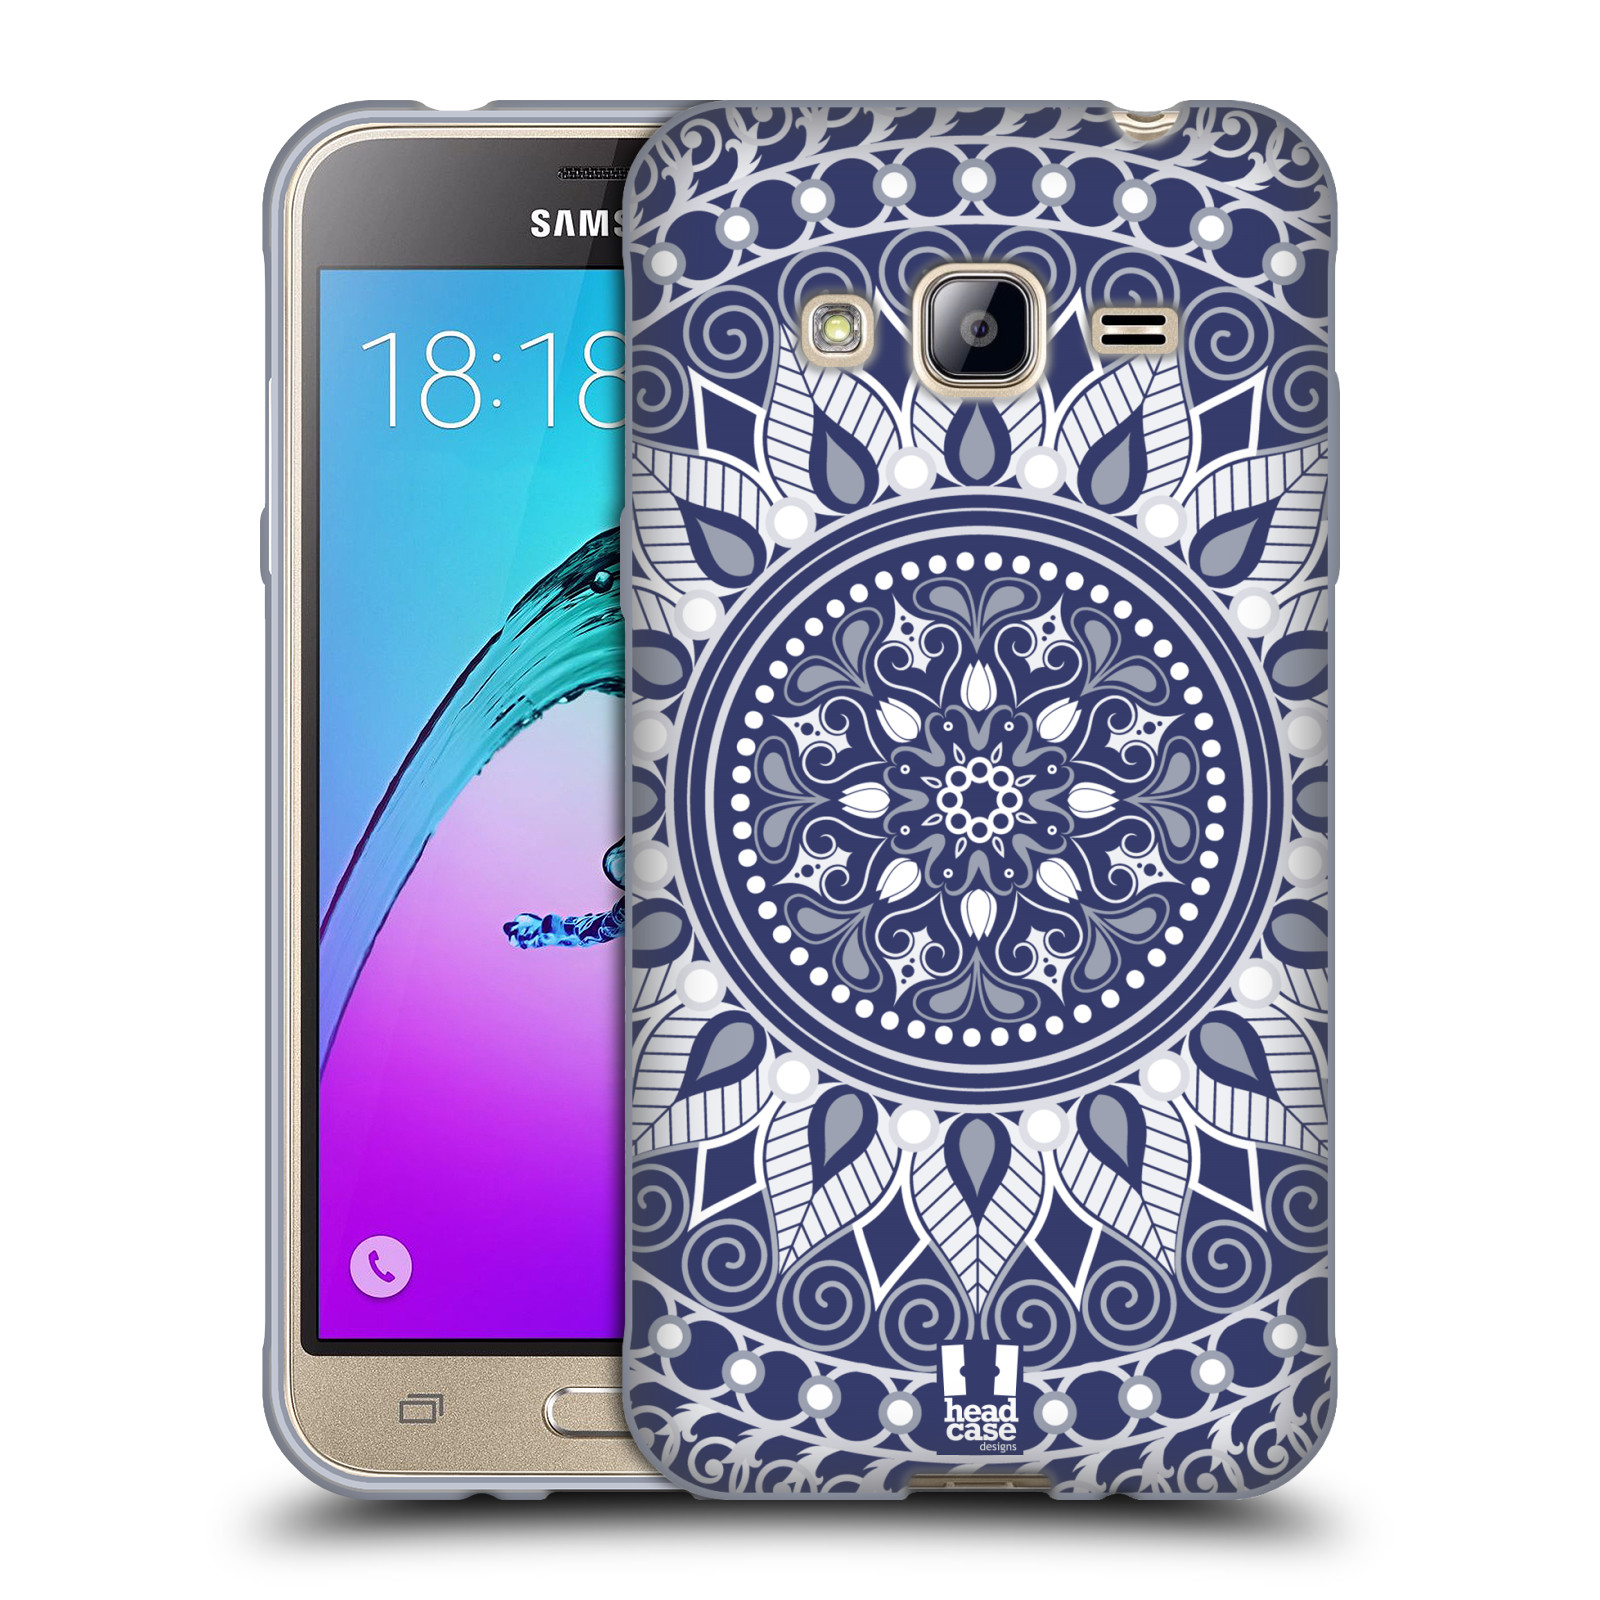 HEAD CASE silikonový obal na mobil Samsung Galaxy J3, J3 2016 vzor Indie Mandala slunce barevný motiv MODRÁ